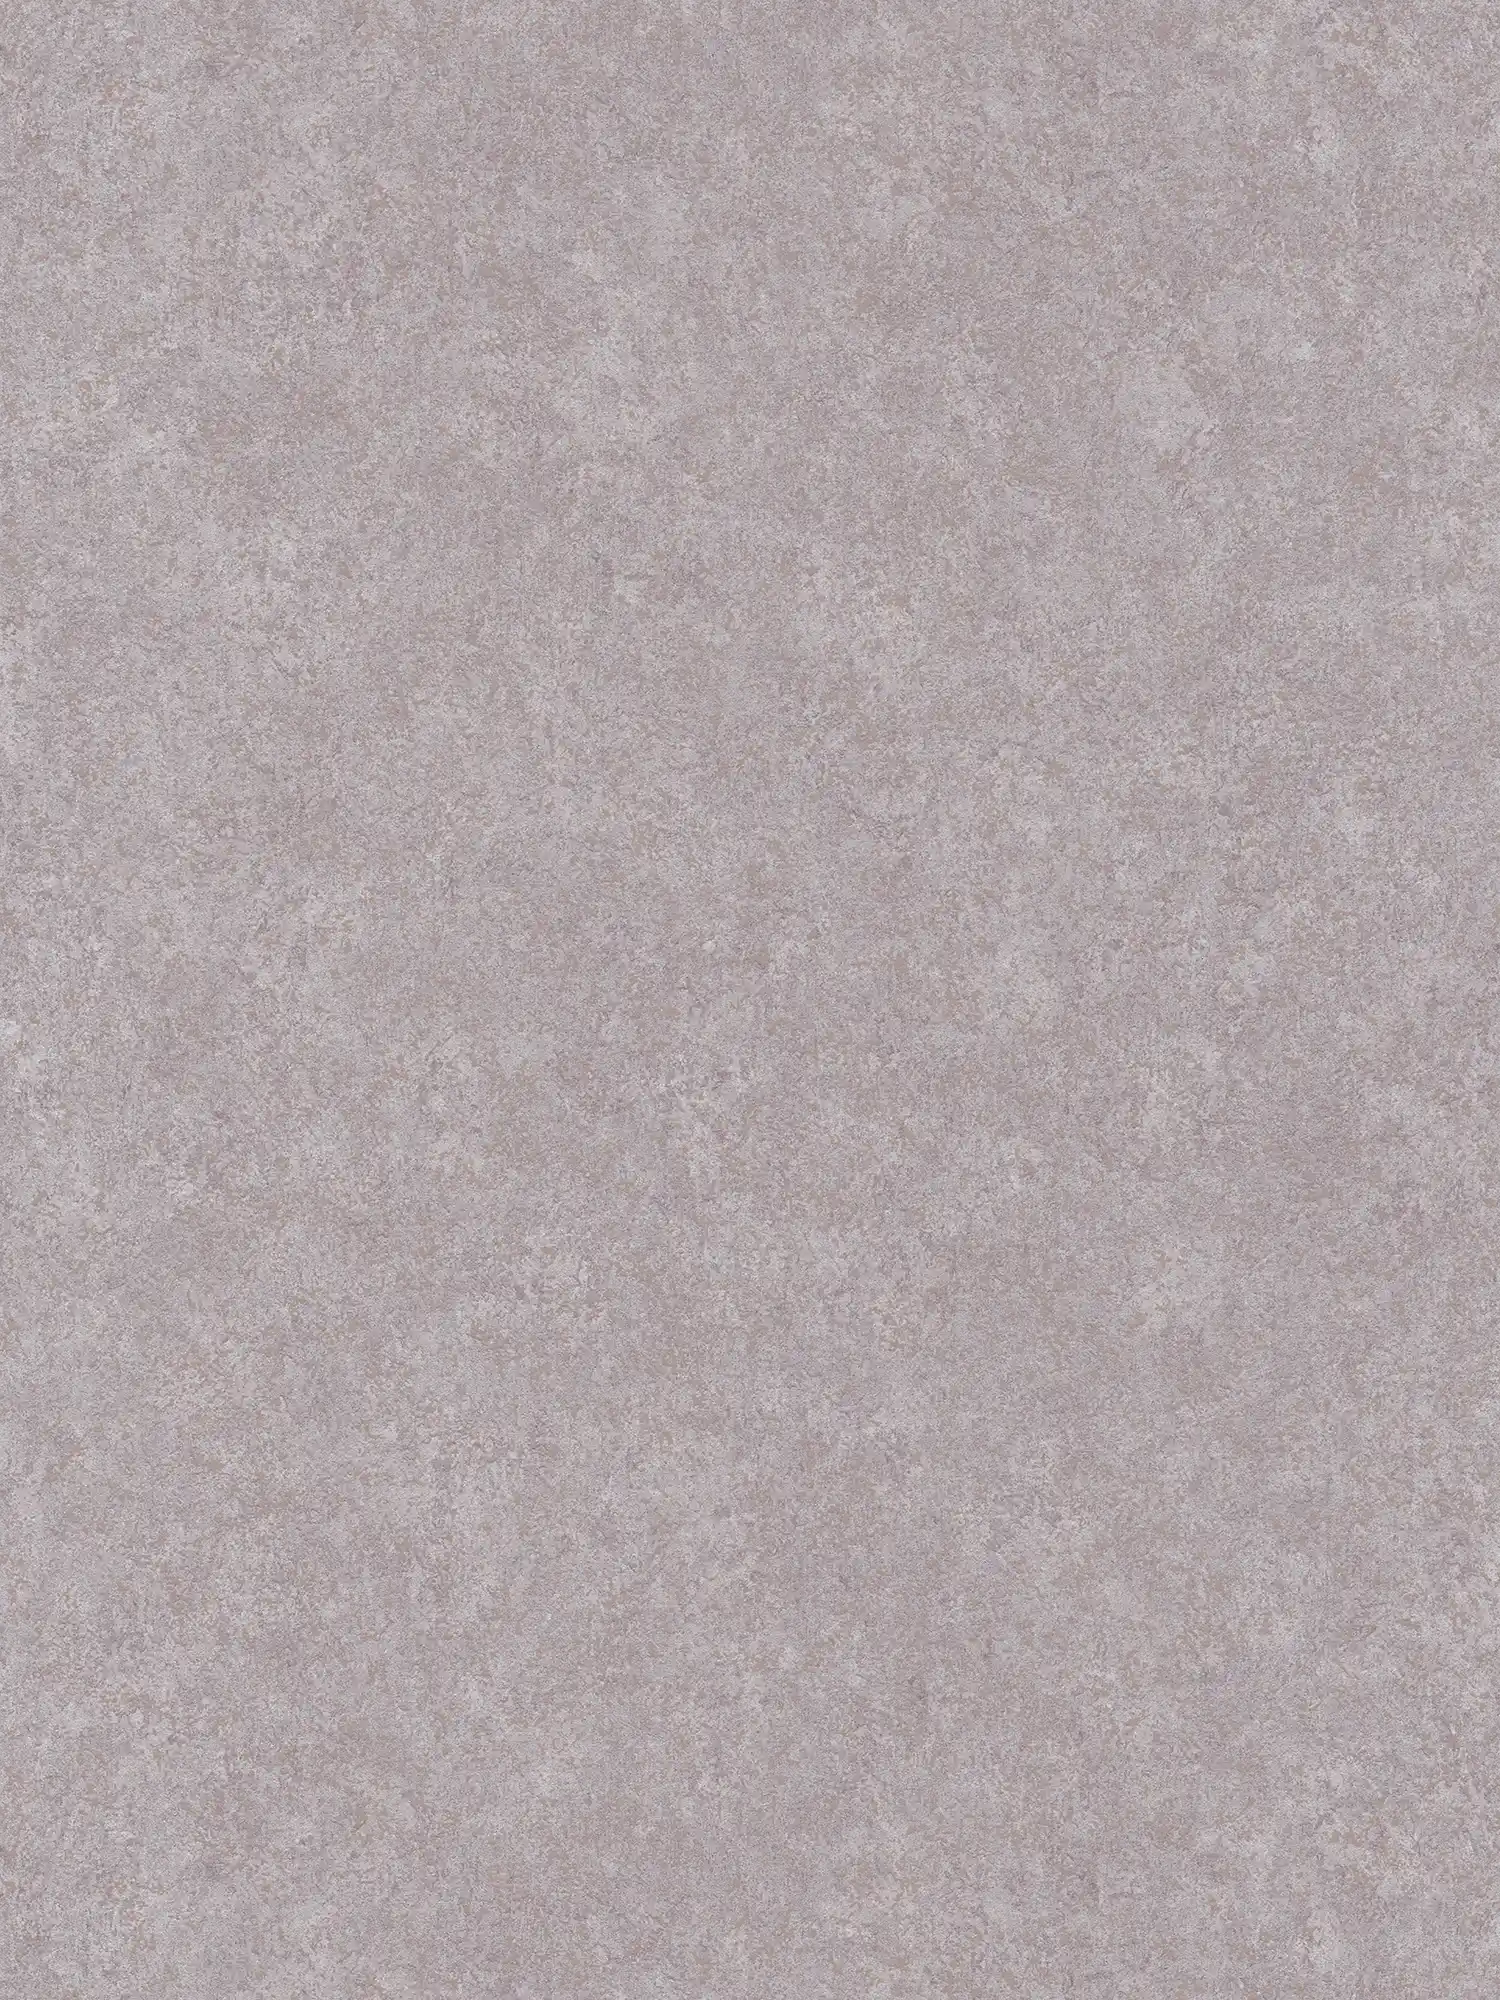 Papel pintado neutro de aspecto de yeso con superficie mate - gris
